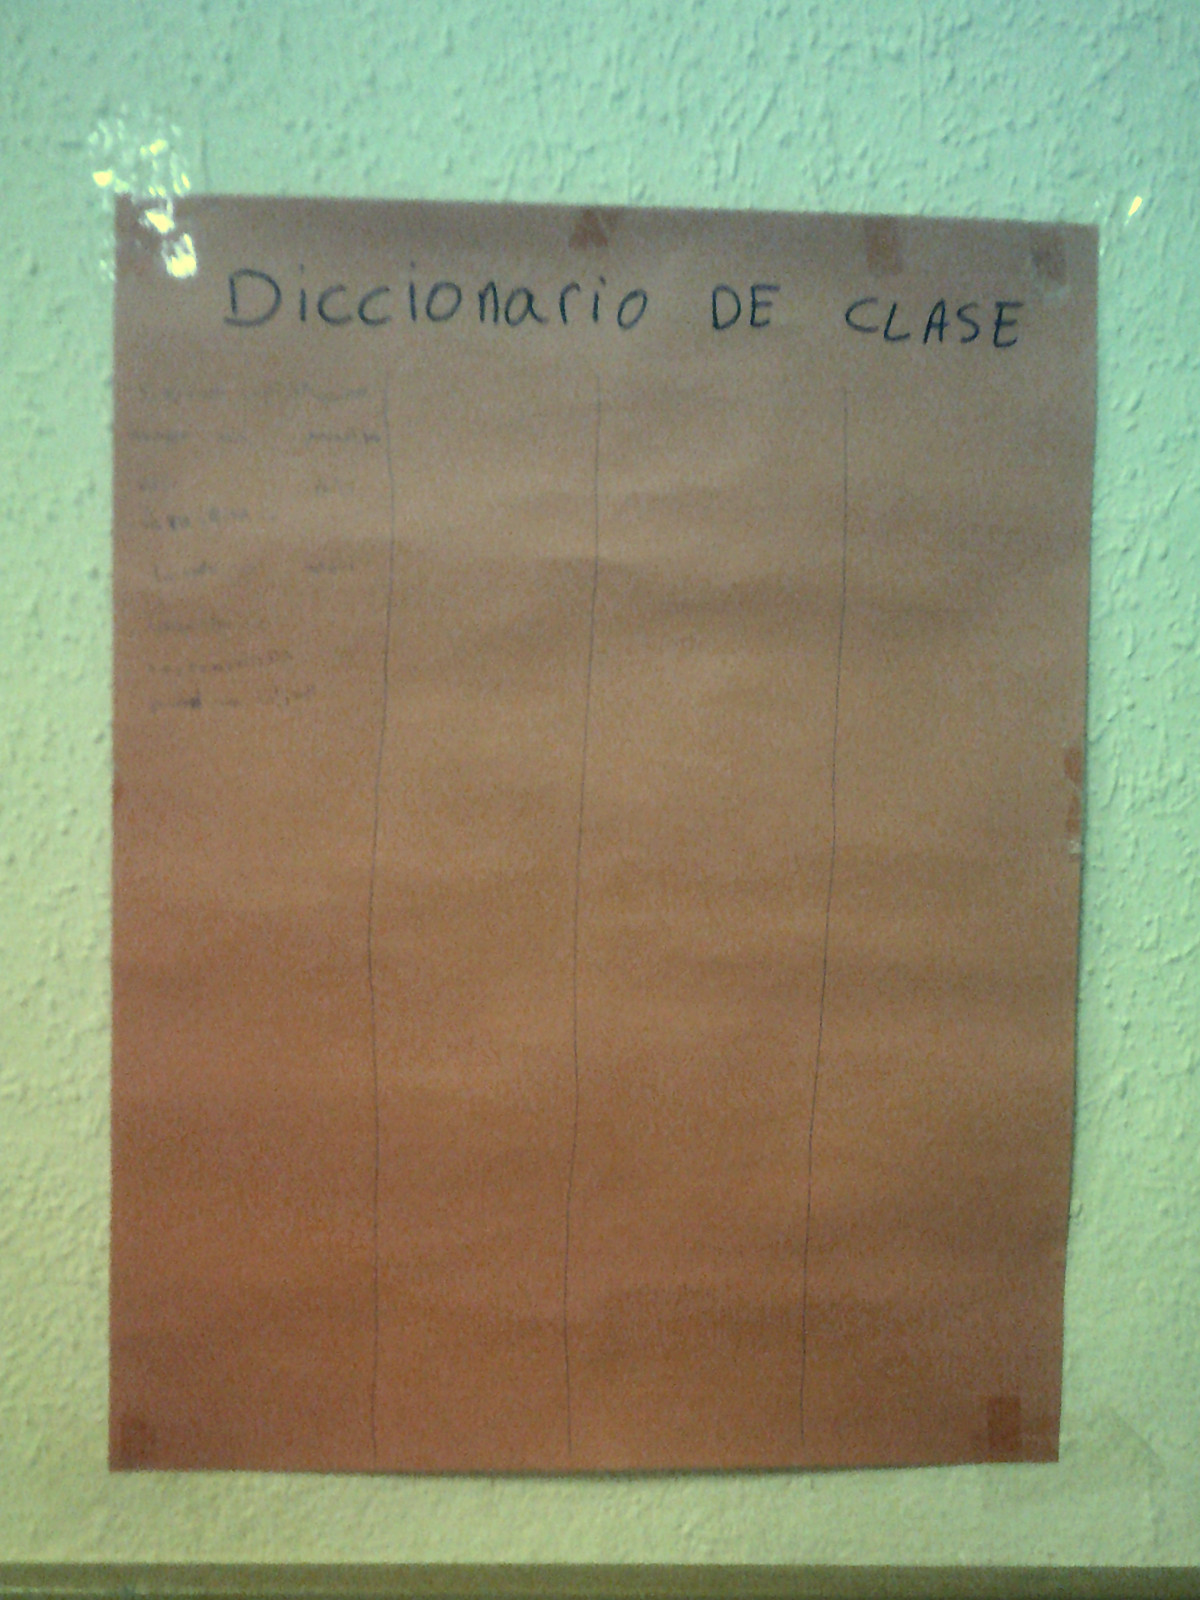 Cartulina sobre la pared con el título "Diccionario de clase" y algunas palabras escritas